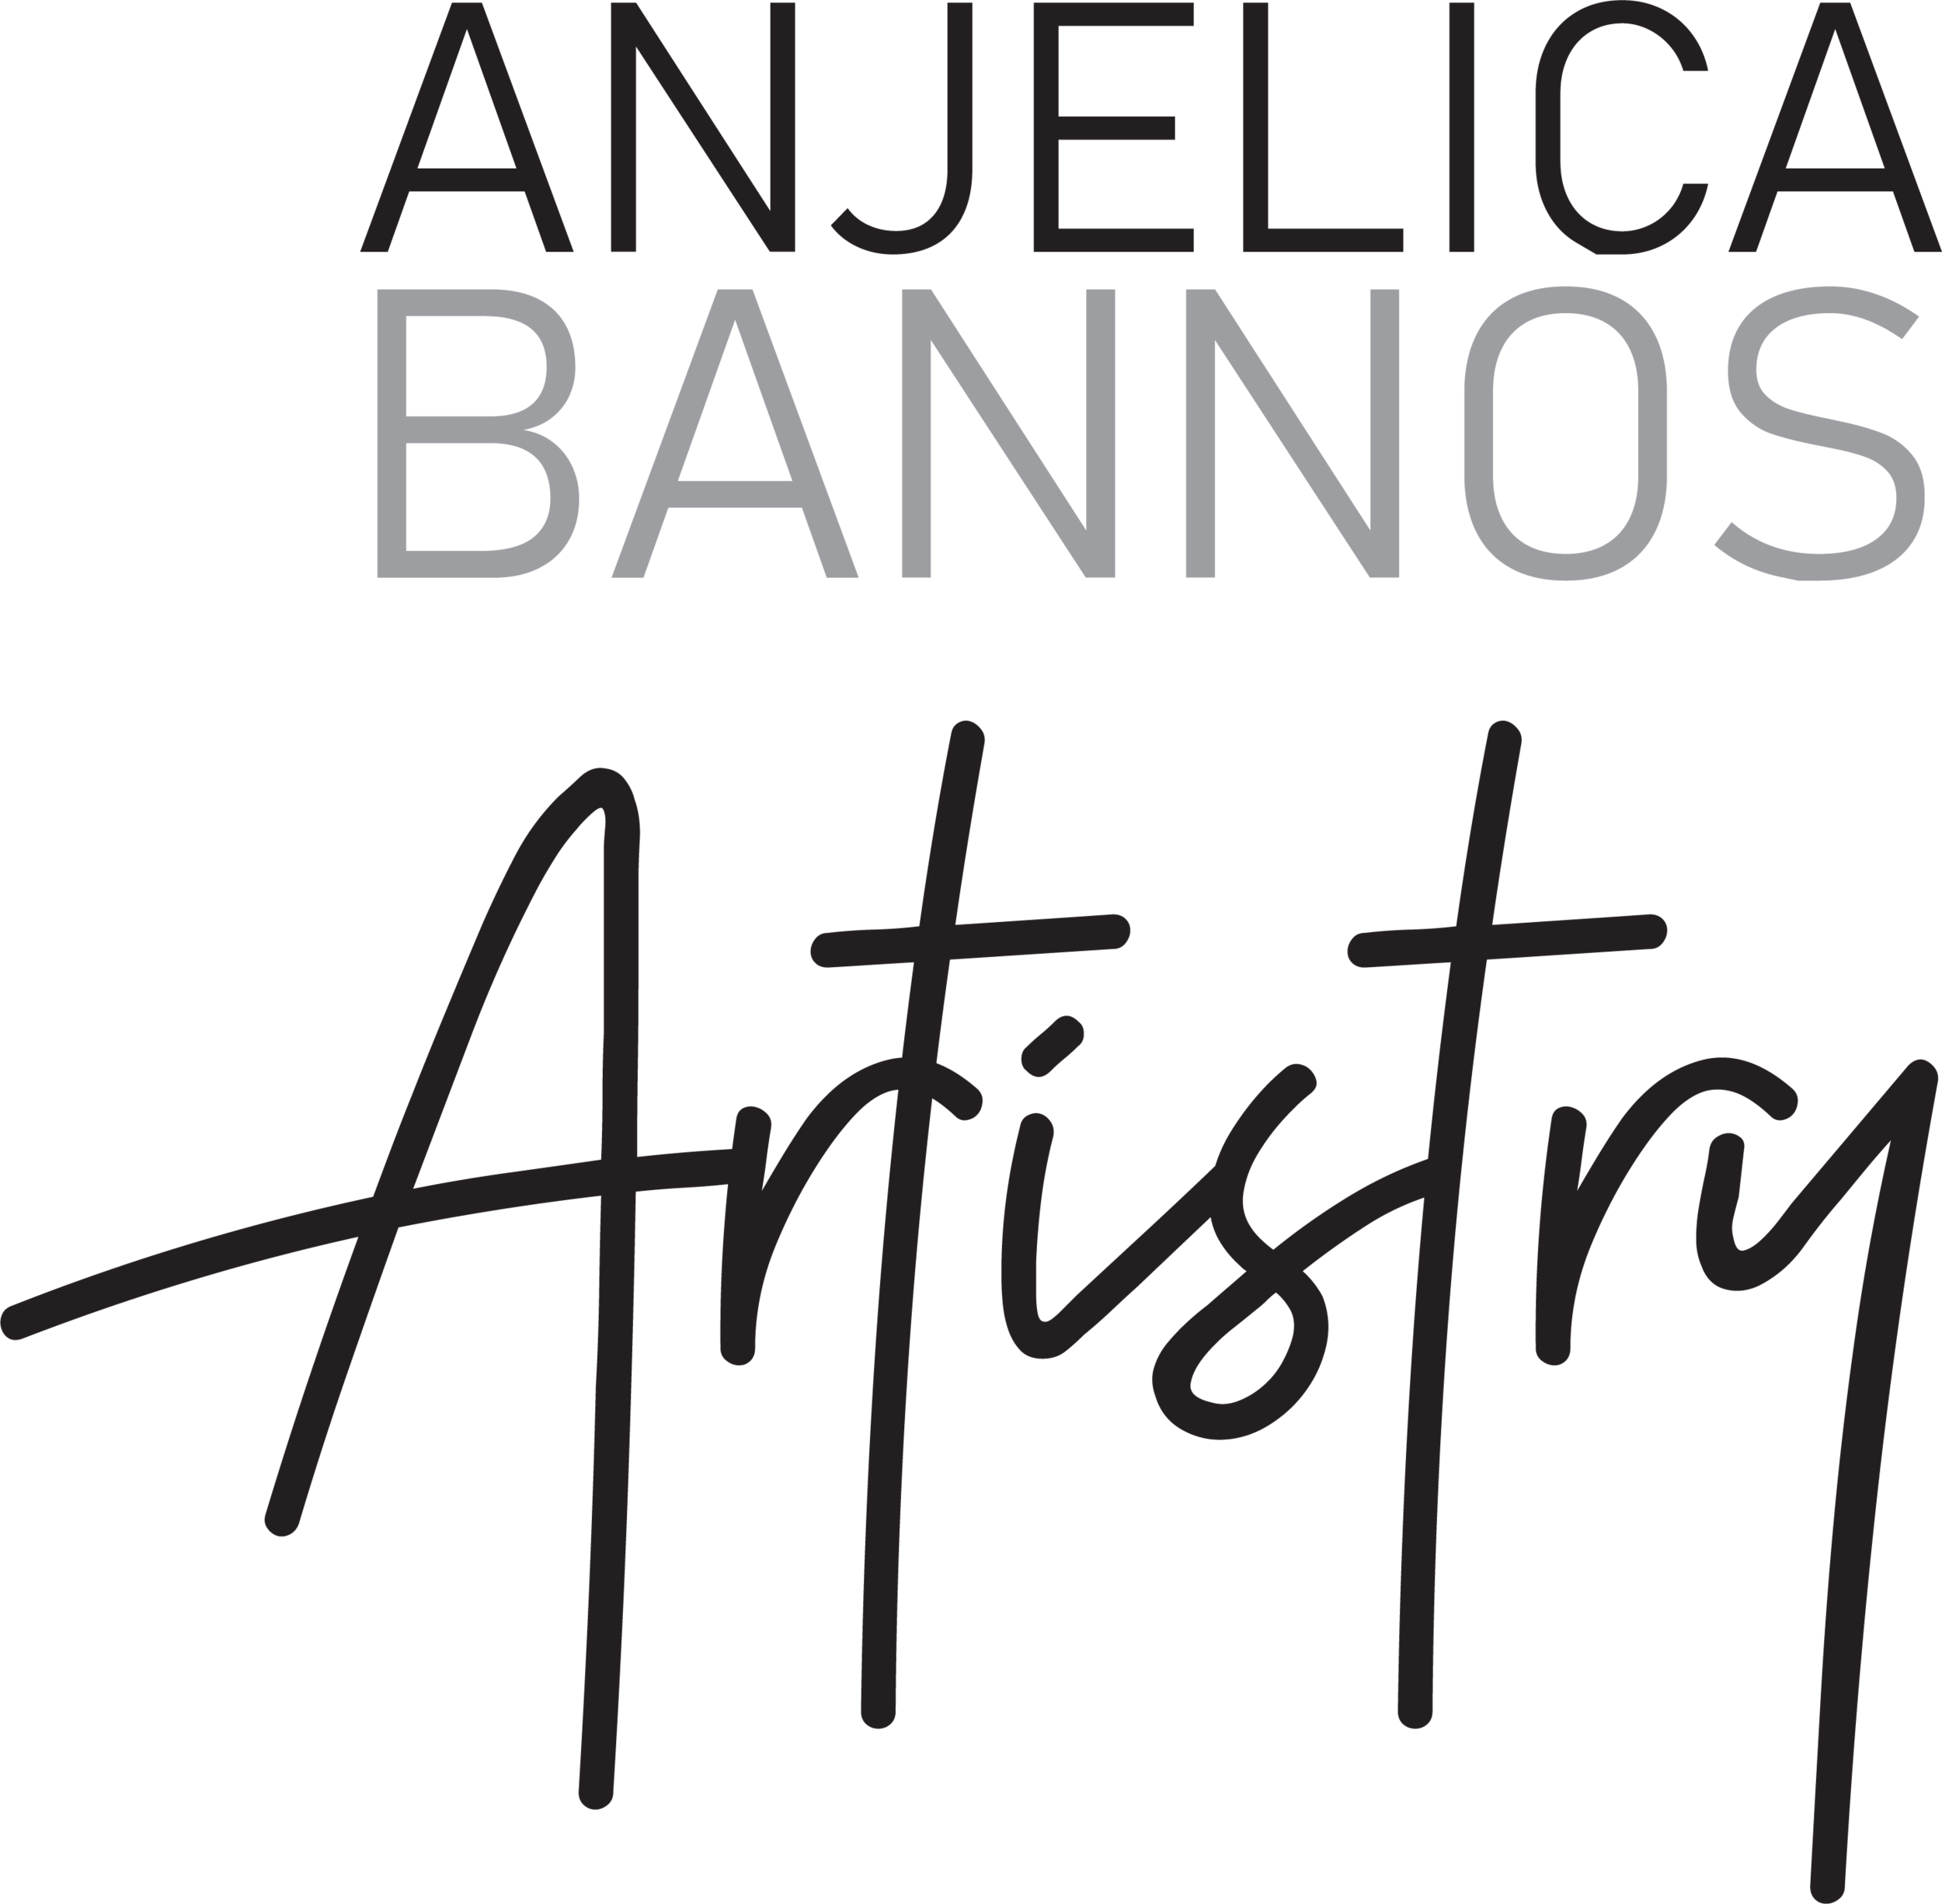 Anjelica Bannos Artistry